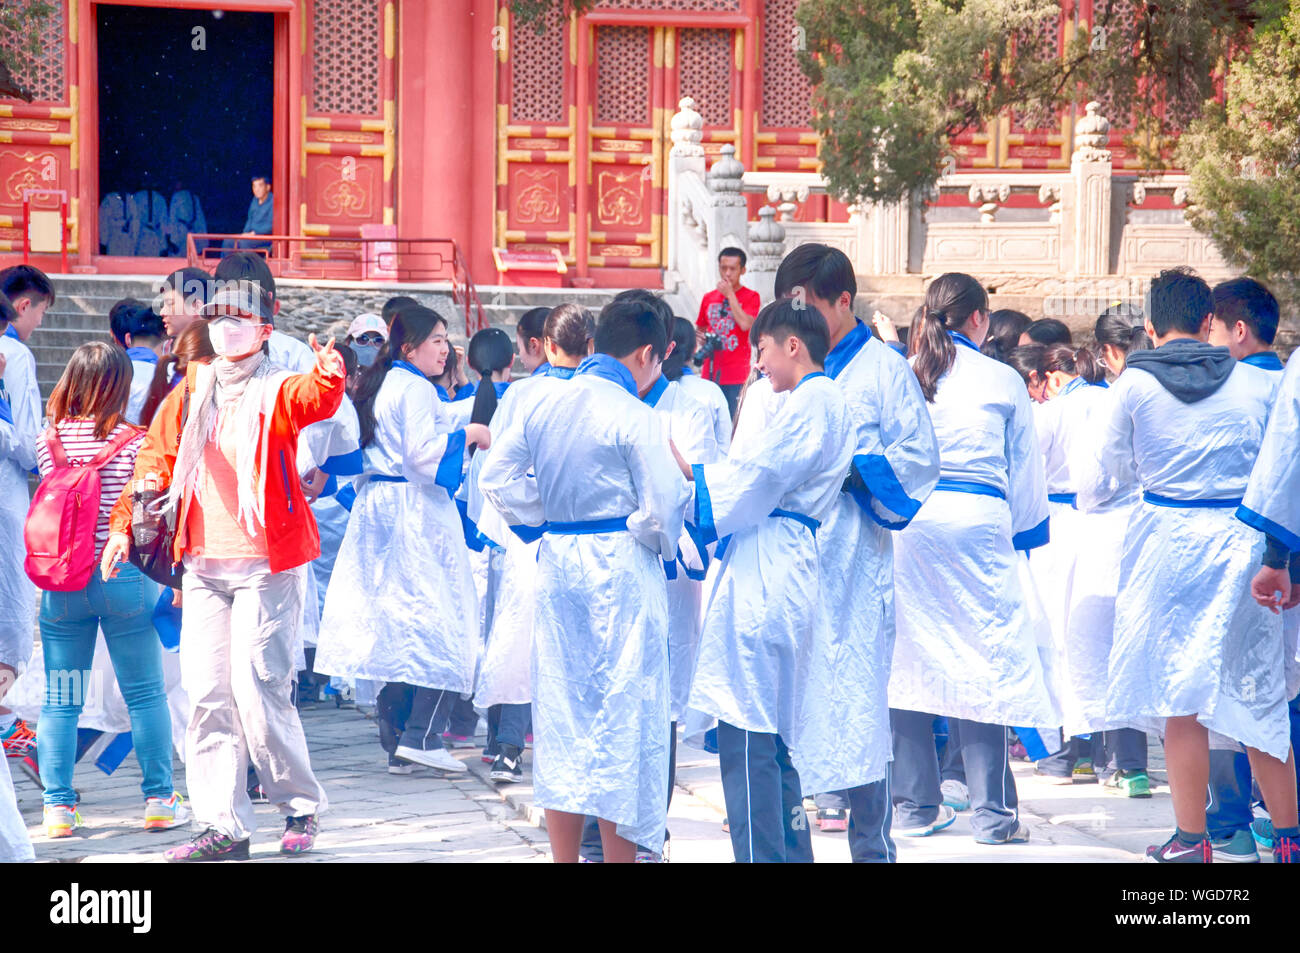 Beijing, Chine. Le 25 avril 2016. Les jeunes enfants de l'école habillés en costumes lors de la visite du temple Yonghegong Lama à Beijing en Chine. Banque D'Images